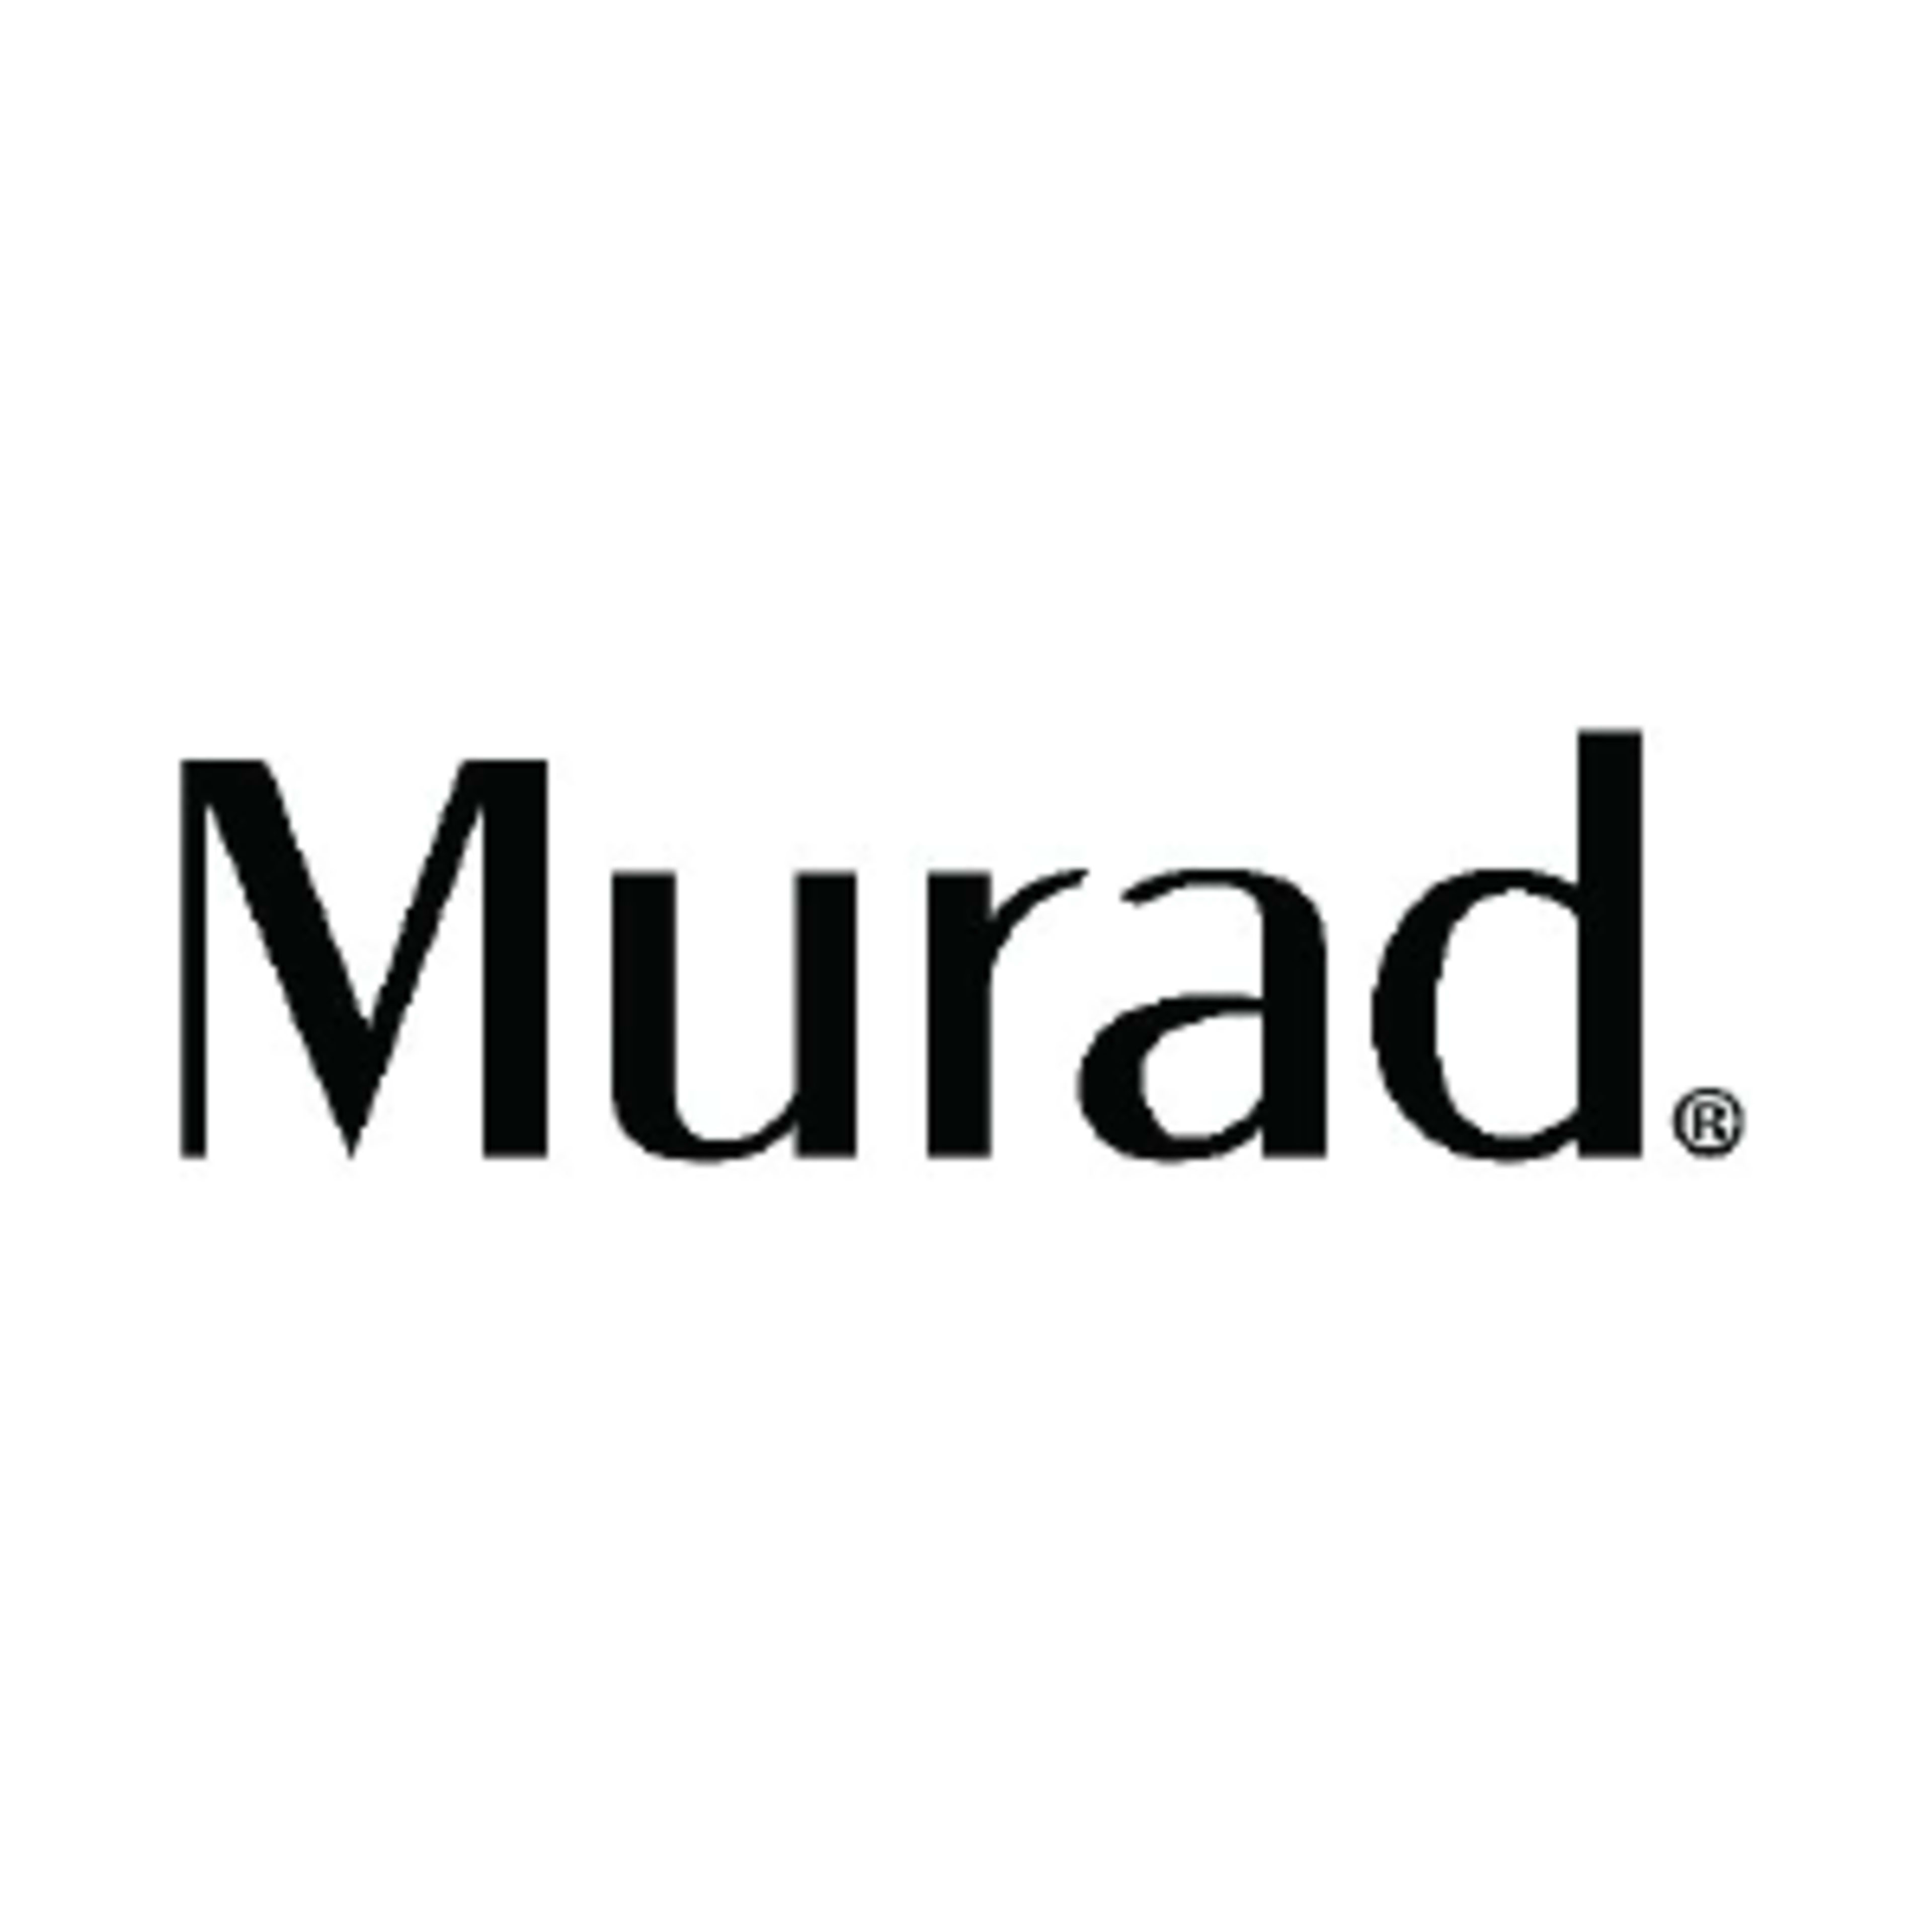 Murad Skin CareCode